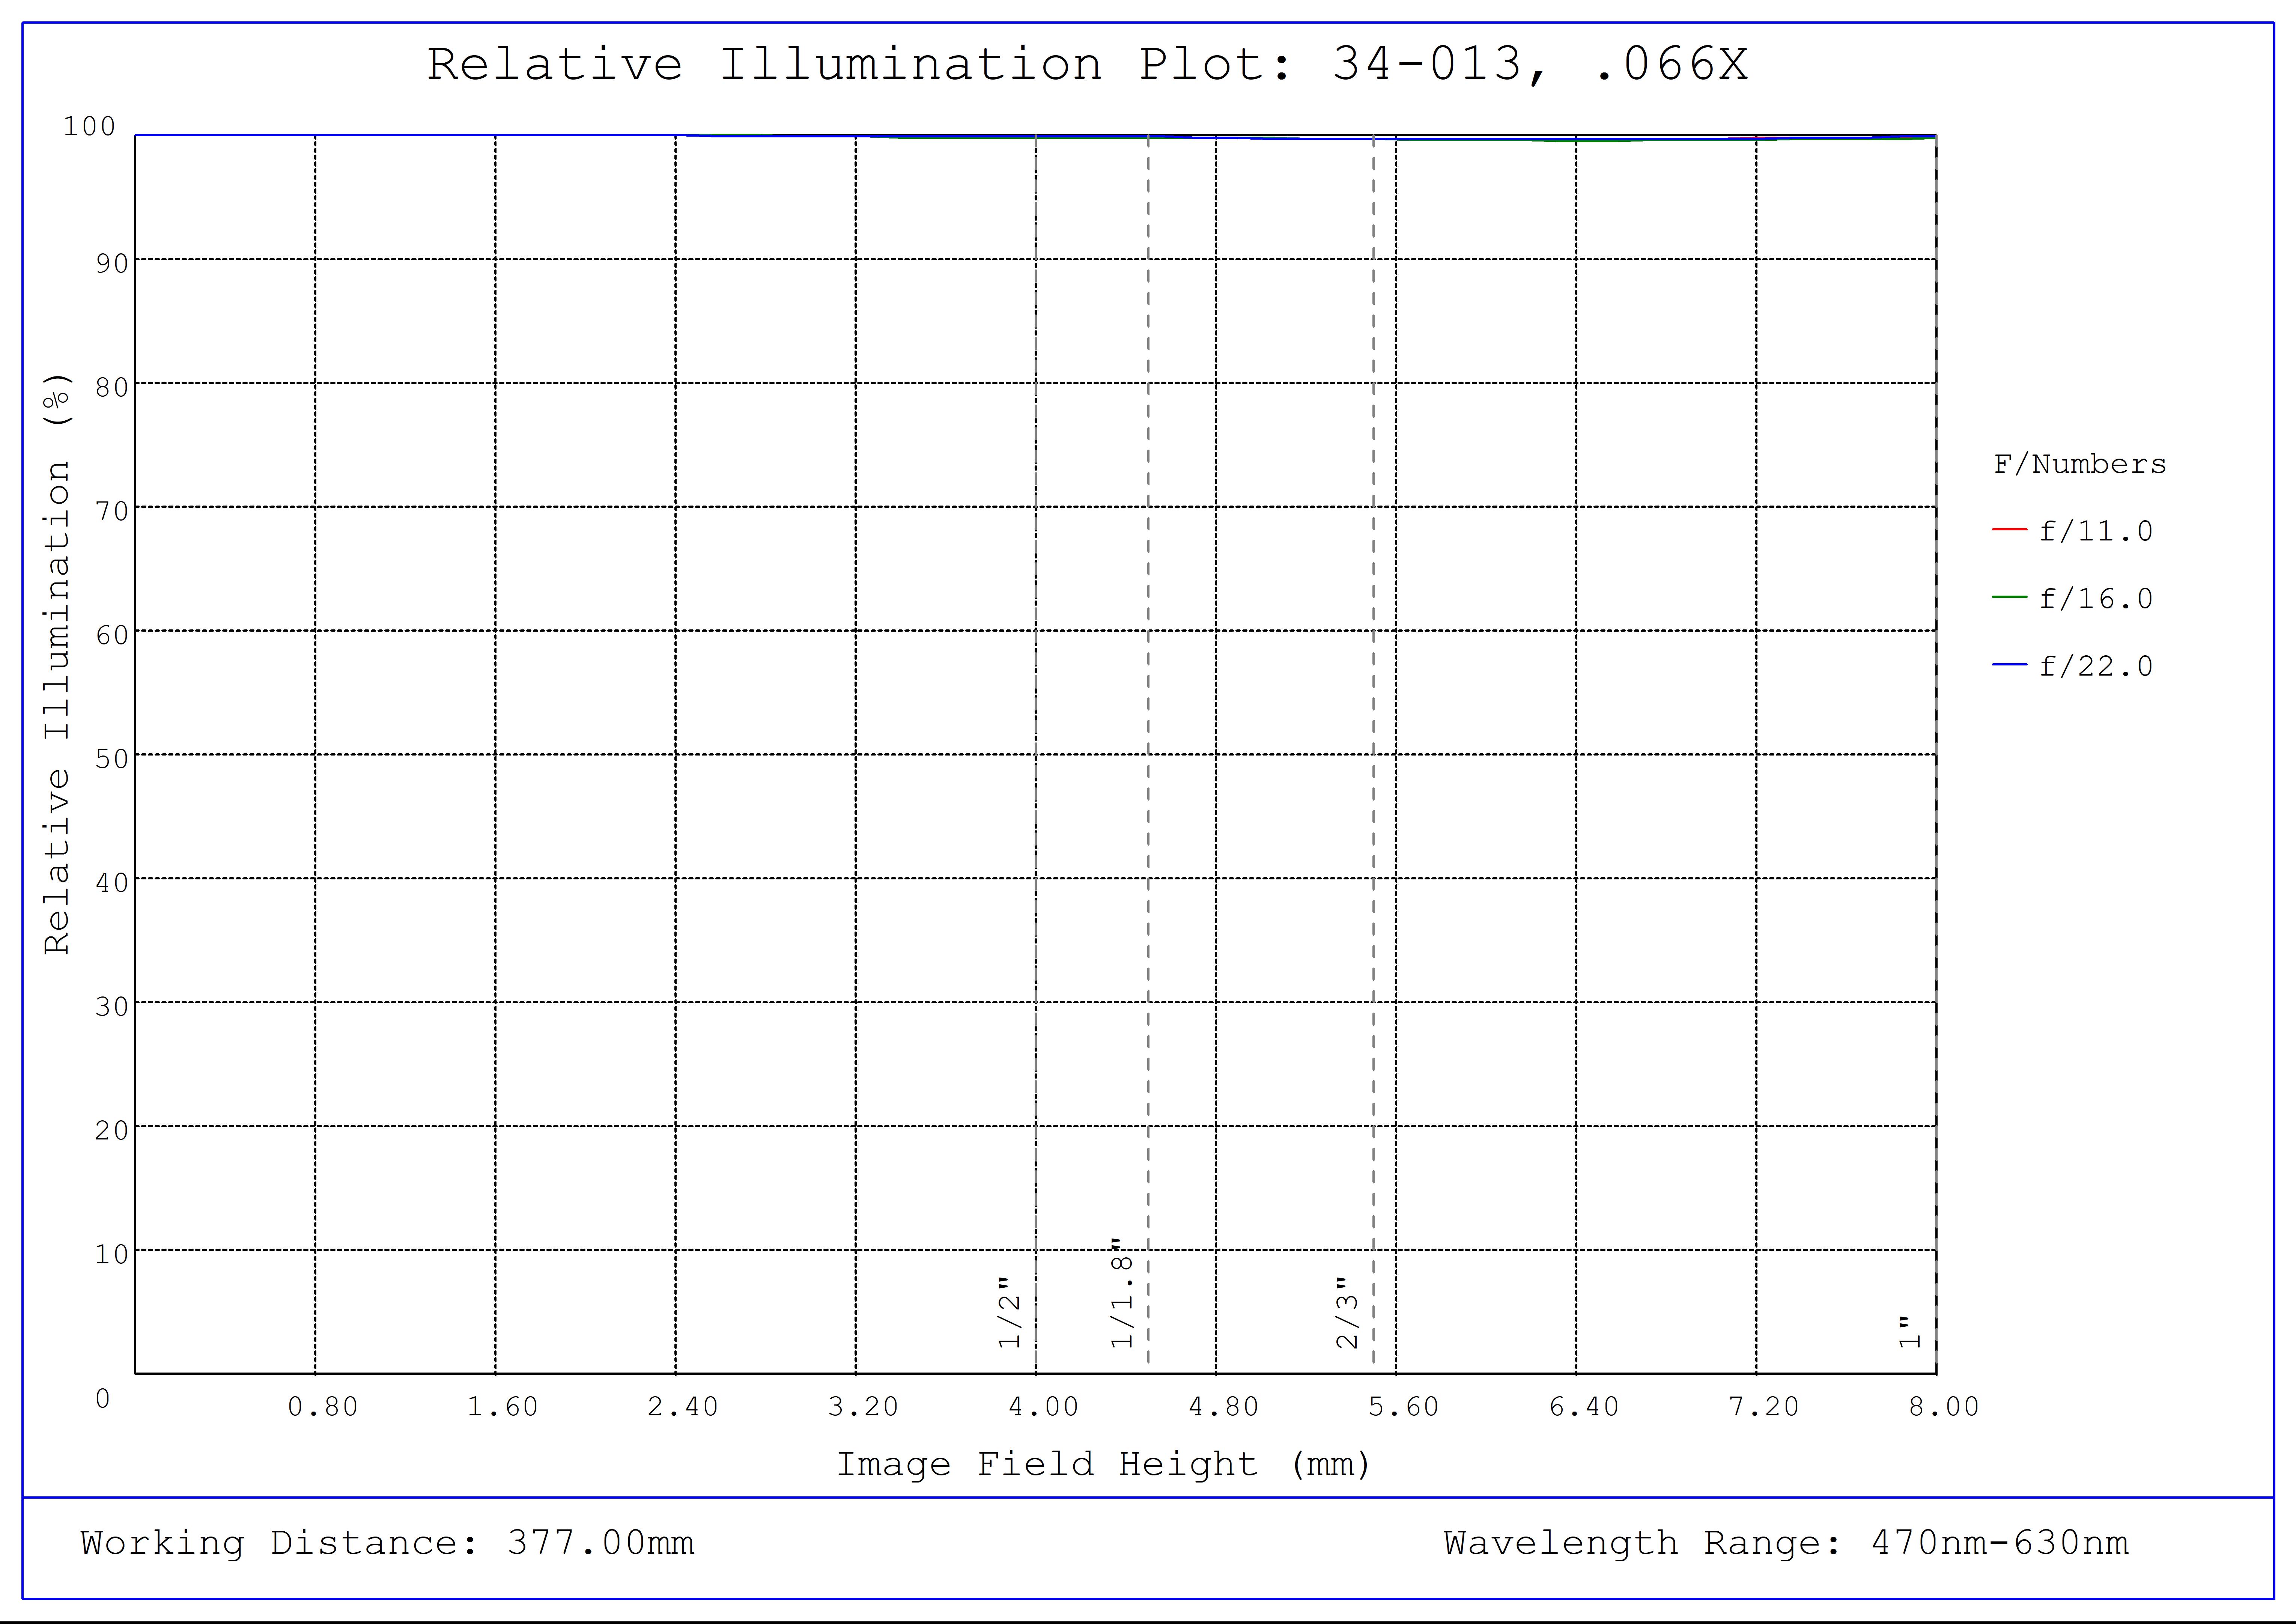 #34-013, 0.066X, 1" C-Mount TitanTL® Telecentric Lens, Relative Illumination Plot